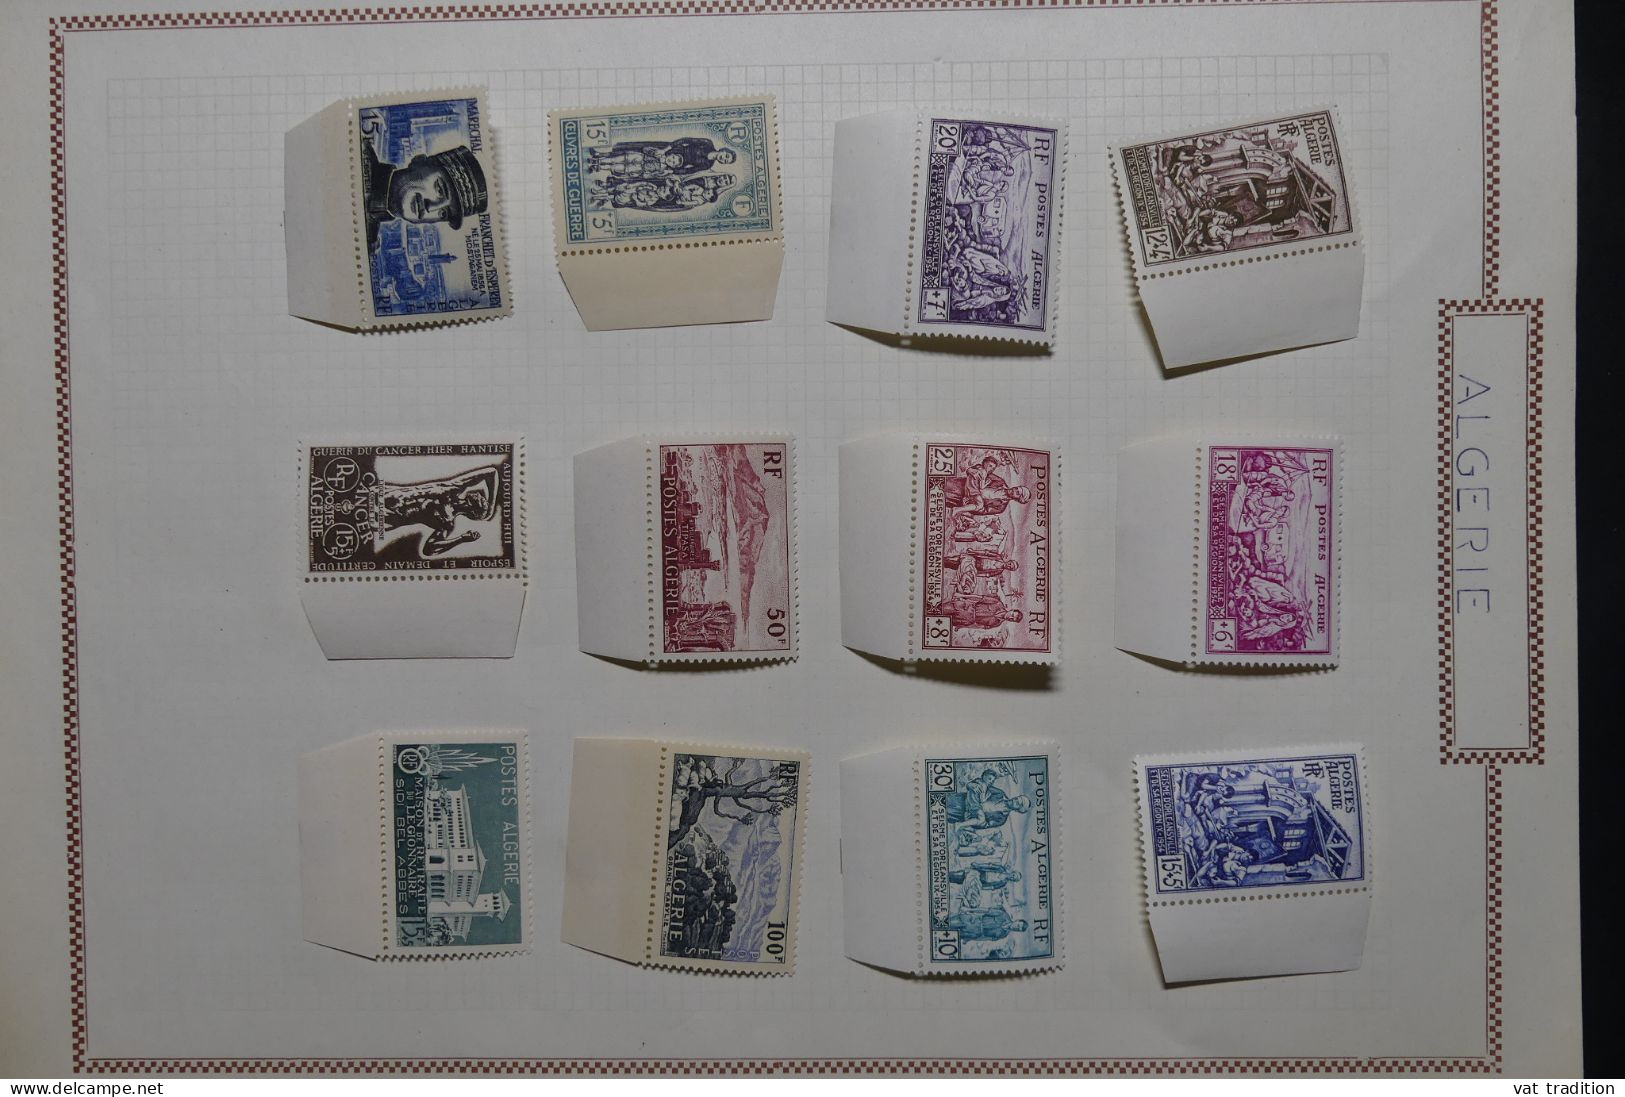 ALGERIE - Petite collection mais les timbres sont luxes ** - Les charnières sont sur les bords de feuille - A 57